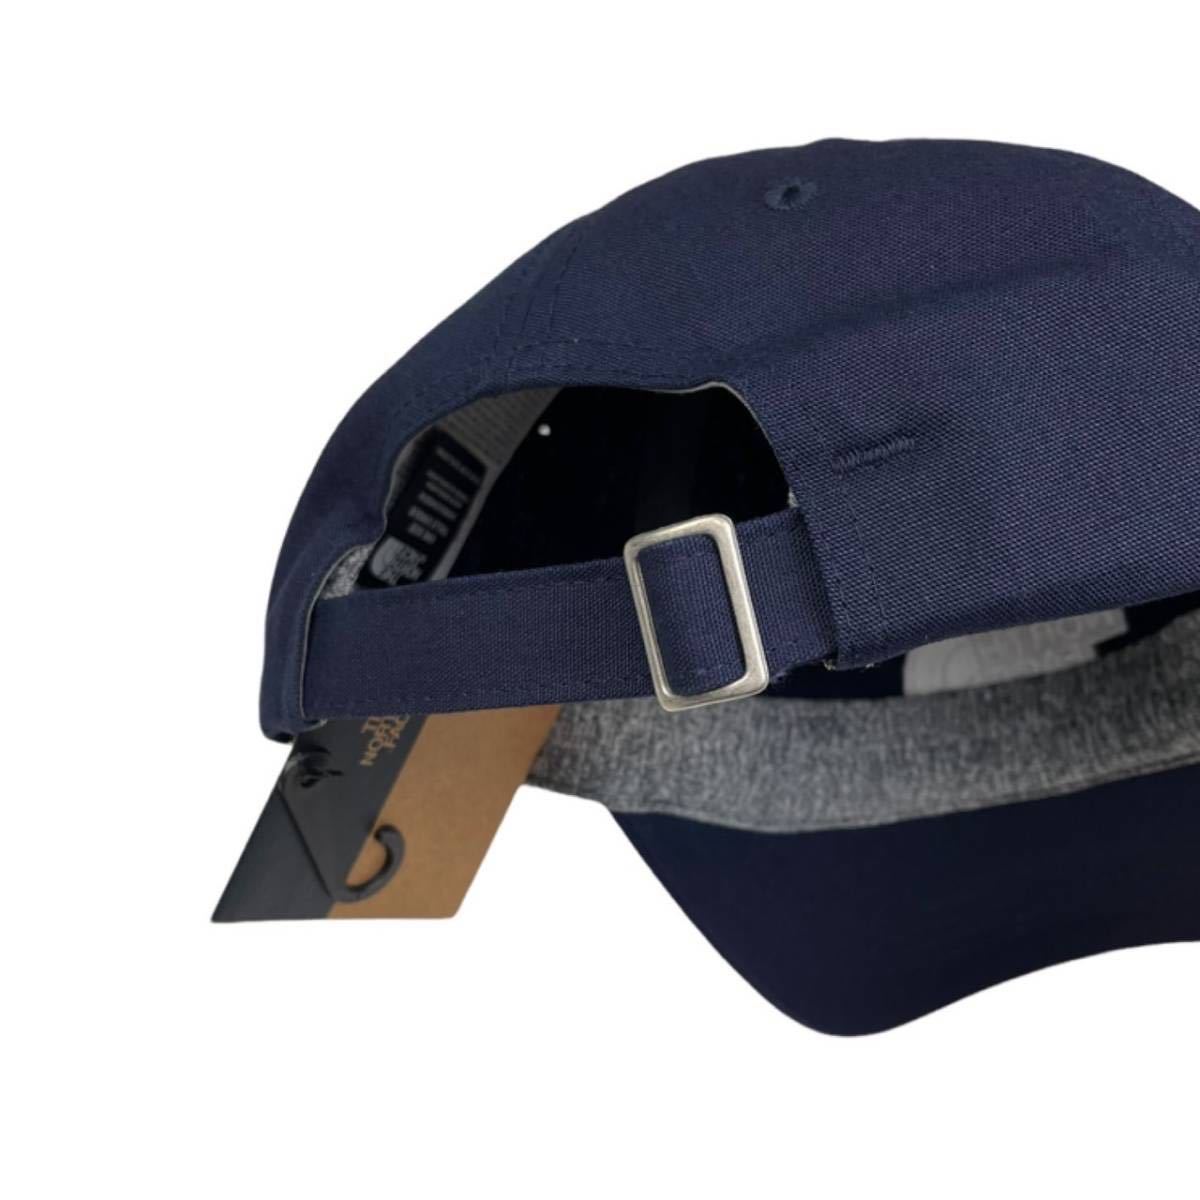 ノースフェイス ノーム ハット キャップ 帽子 ワンサイズ NF0A3SH3 ネイビー ユニセックス THE NORTH FACE NORM CAP 新品